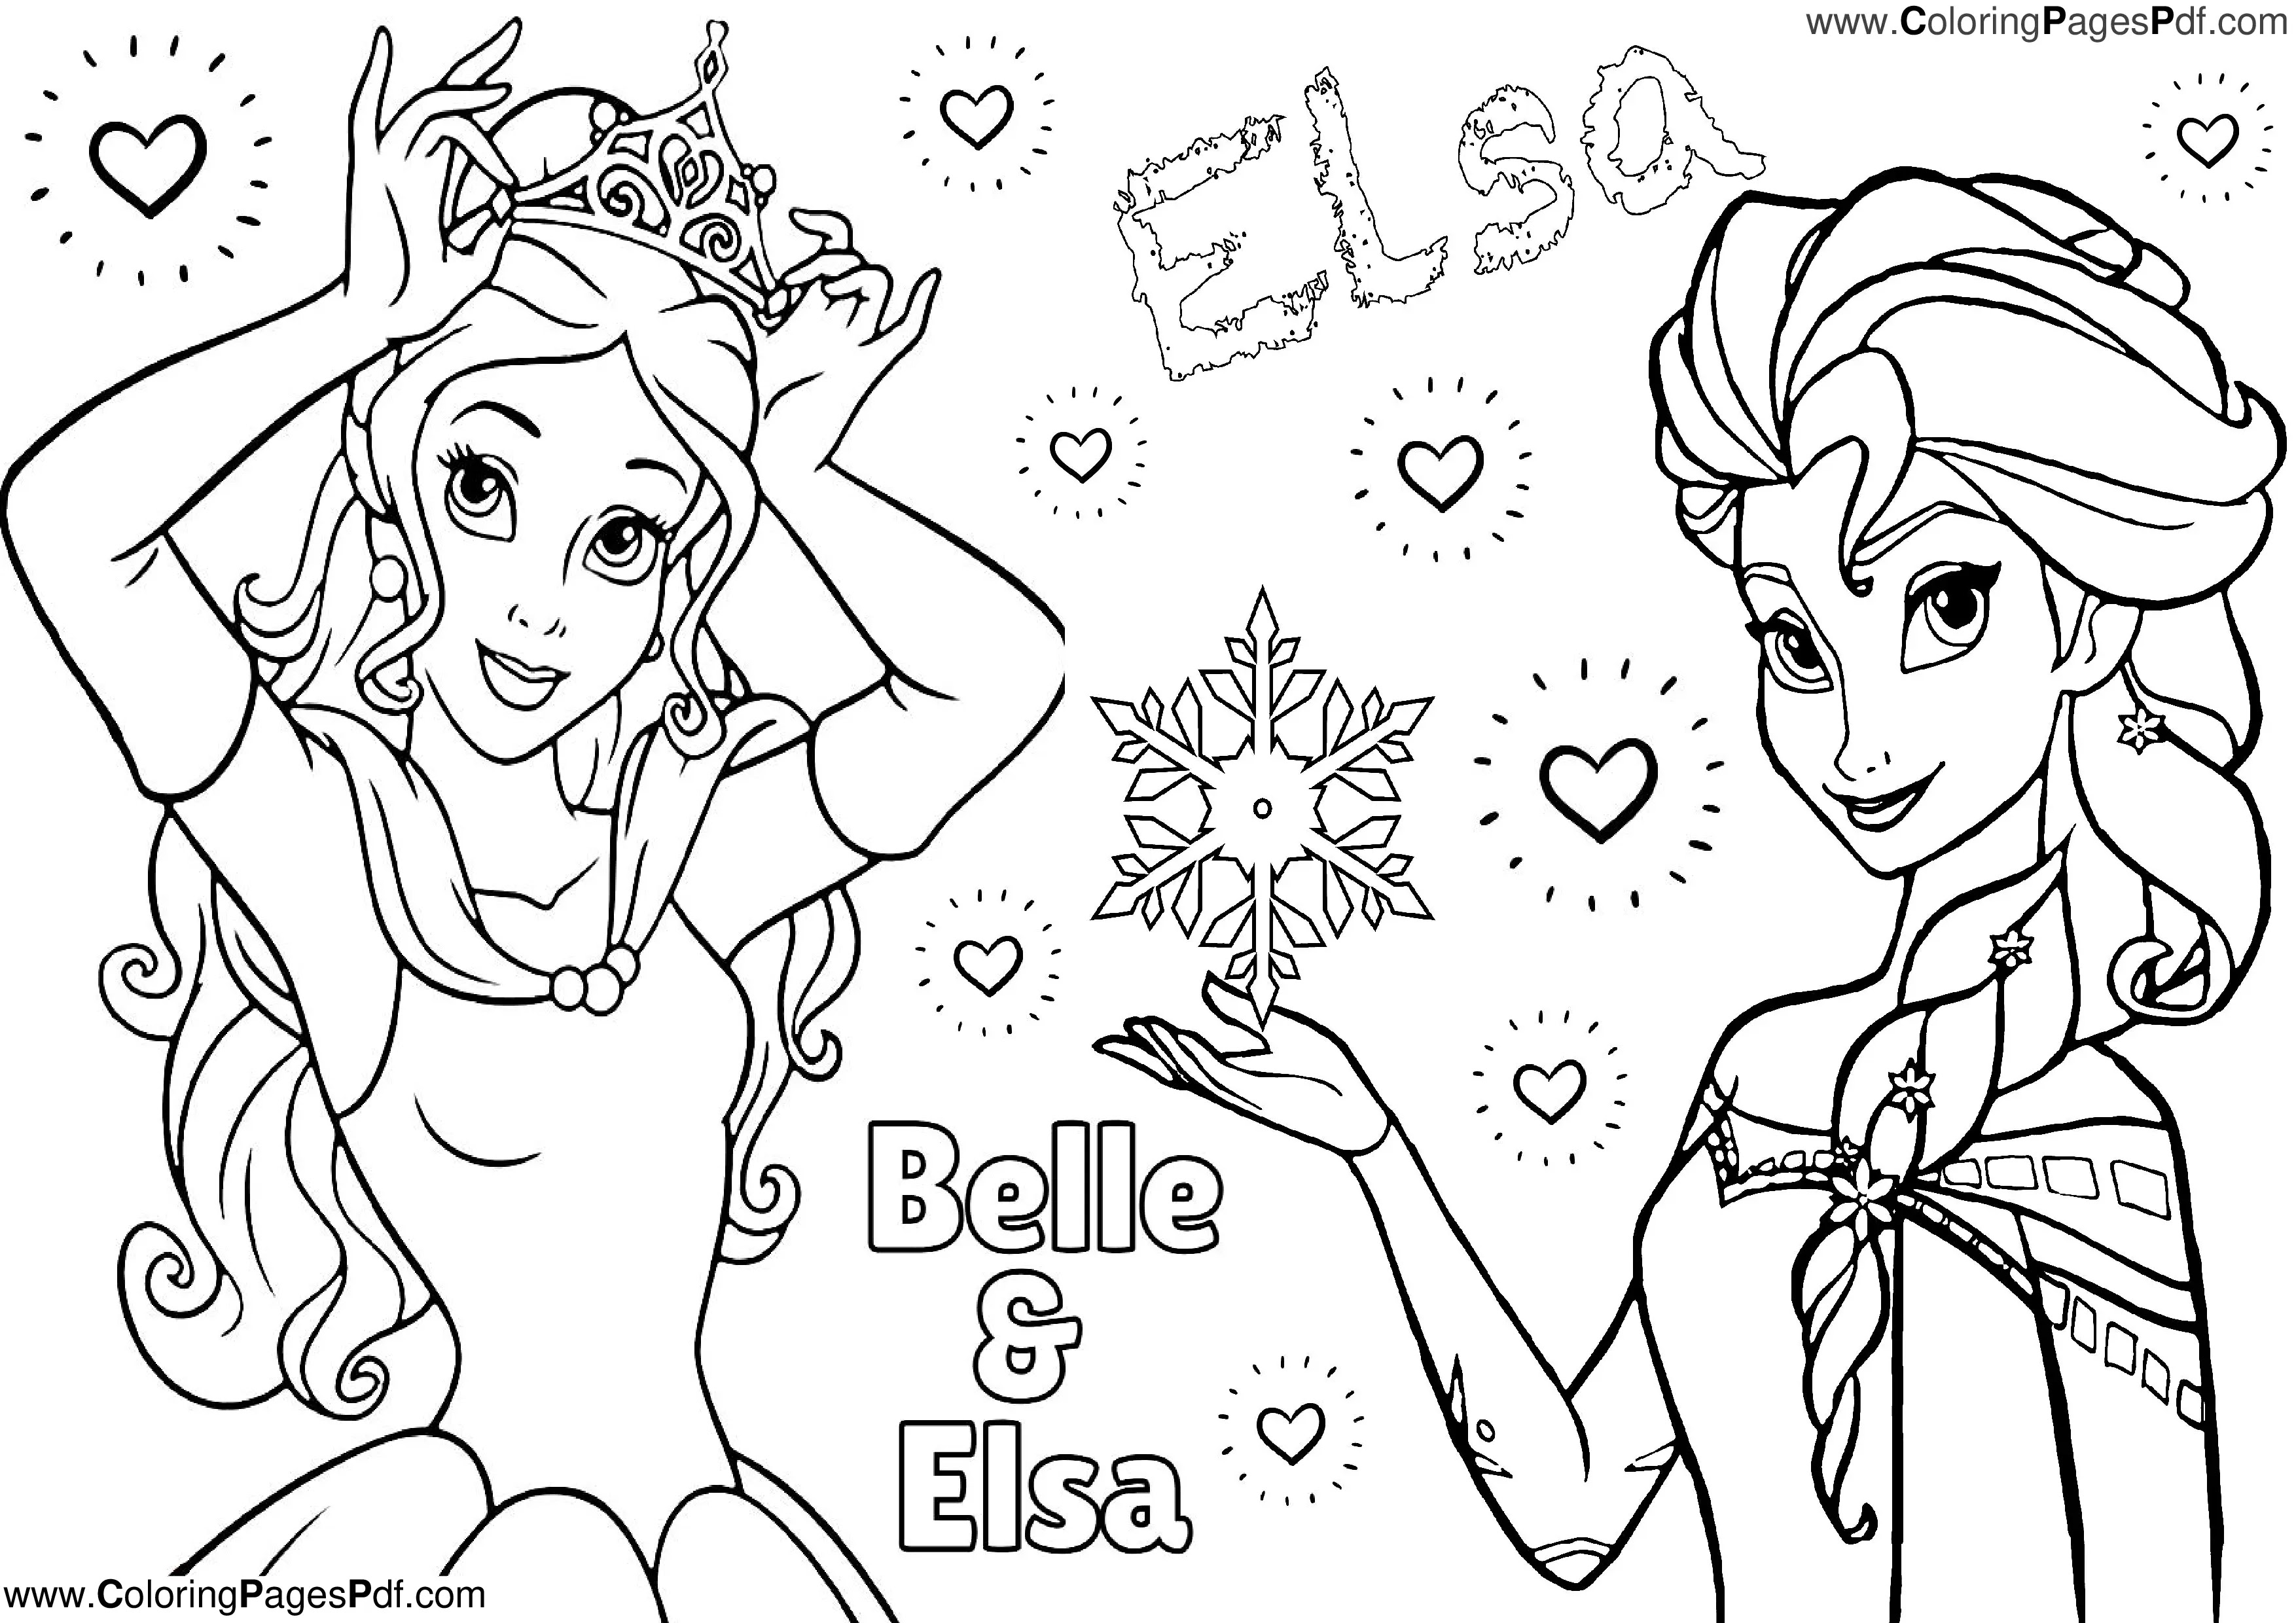 Belle & Elsa Coloring pages